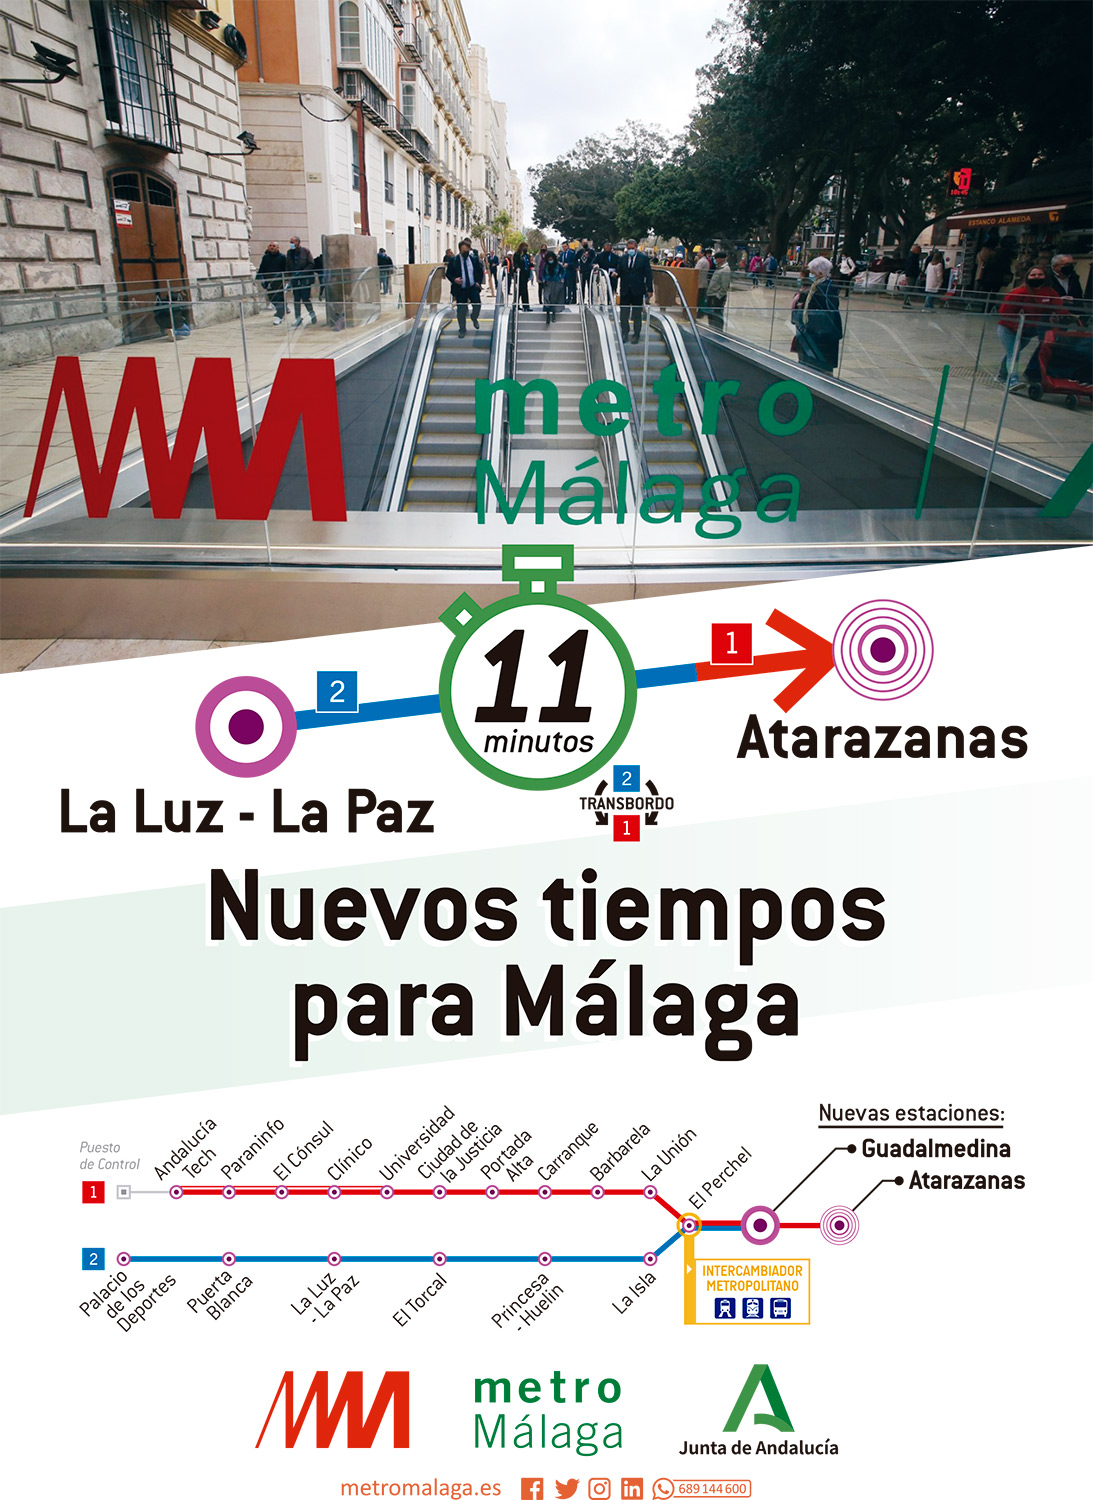 Ejemplo de cálculo de tiempo entre las paradas La Luz - La Paz y Atarazanas